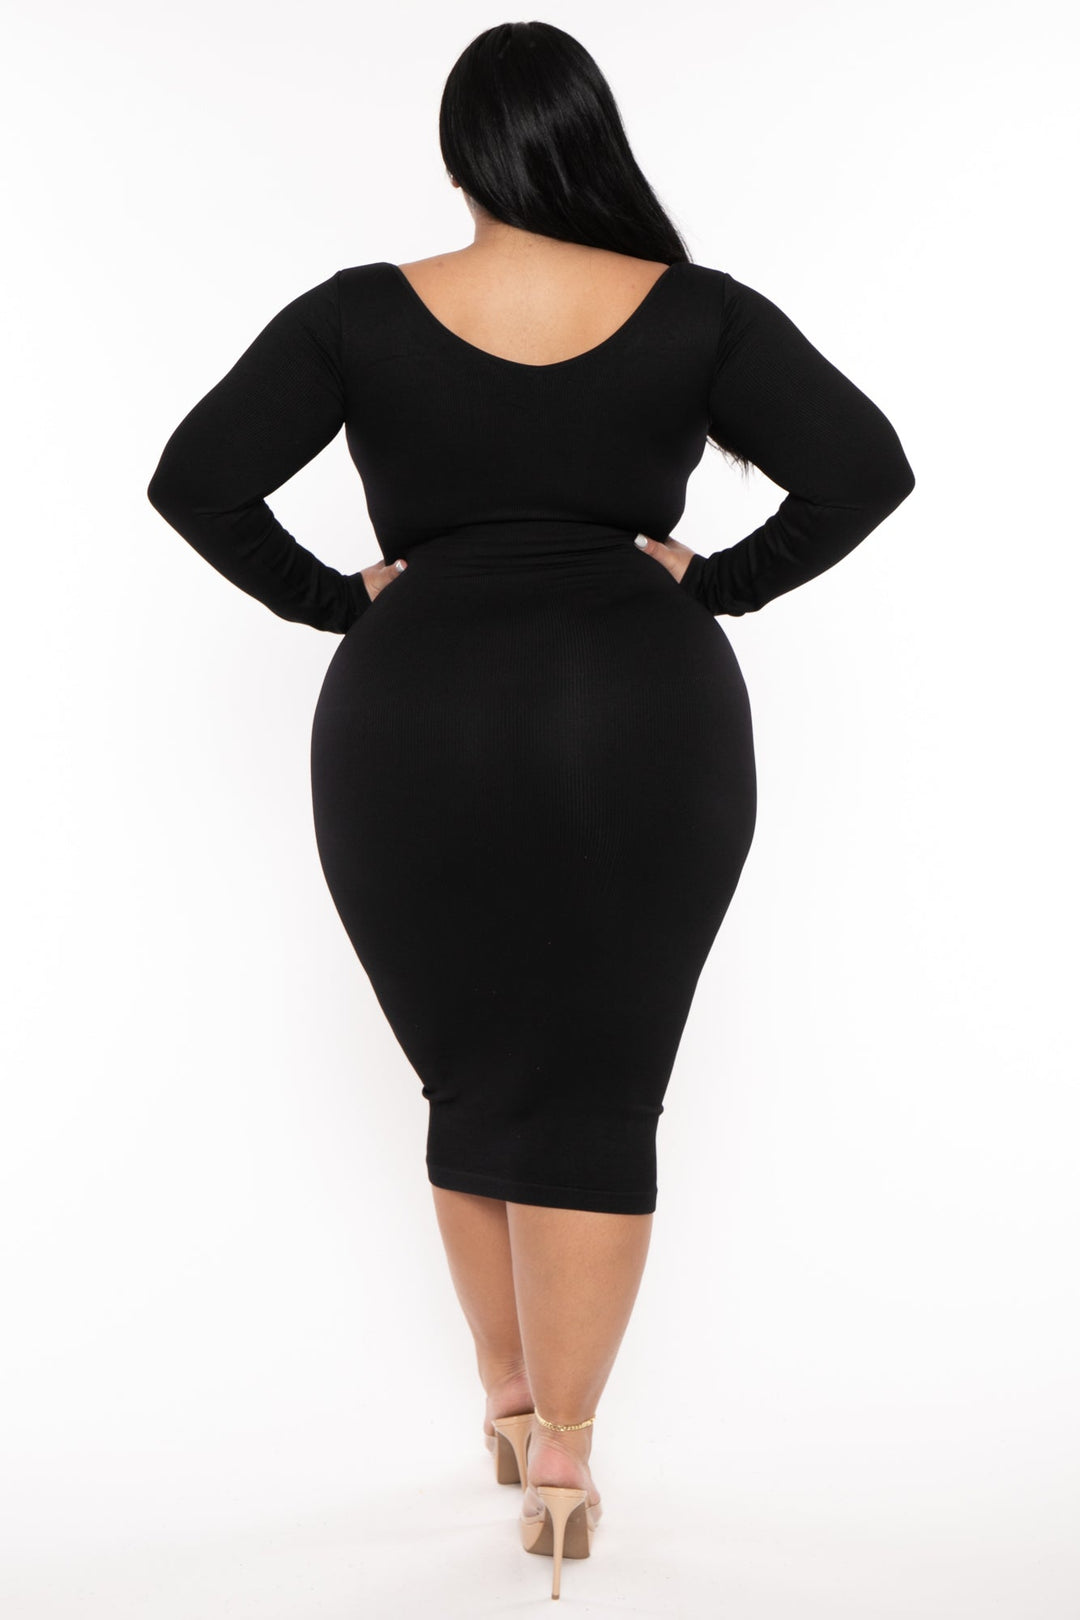 Women's Plus Size Little Black Snatched Dress - Black - Curvy Sense